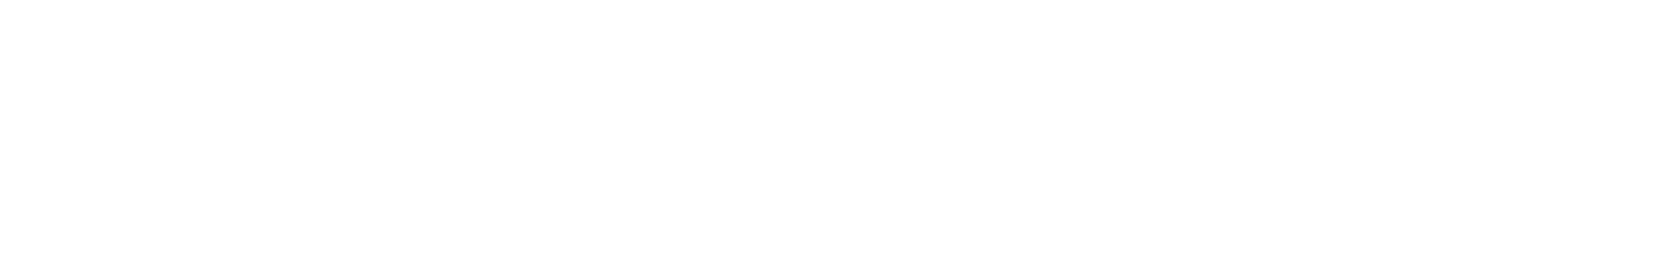 Al-Mawakeb